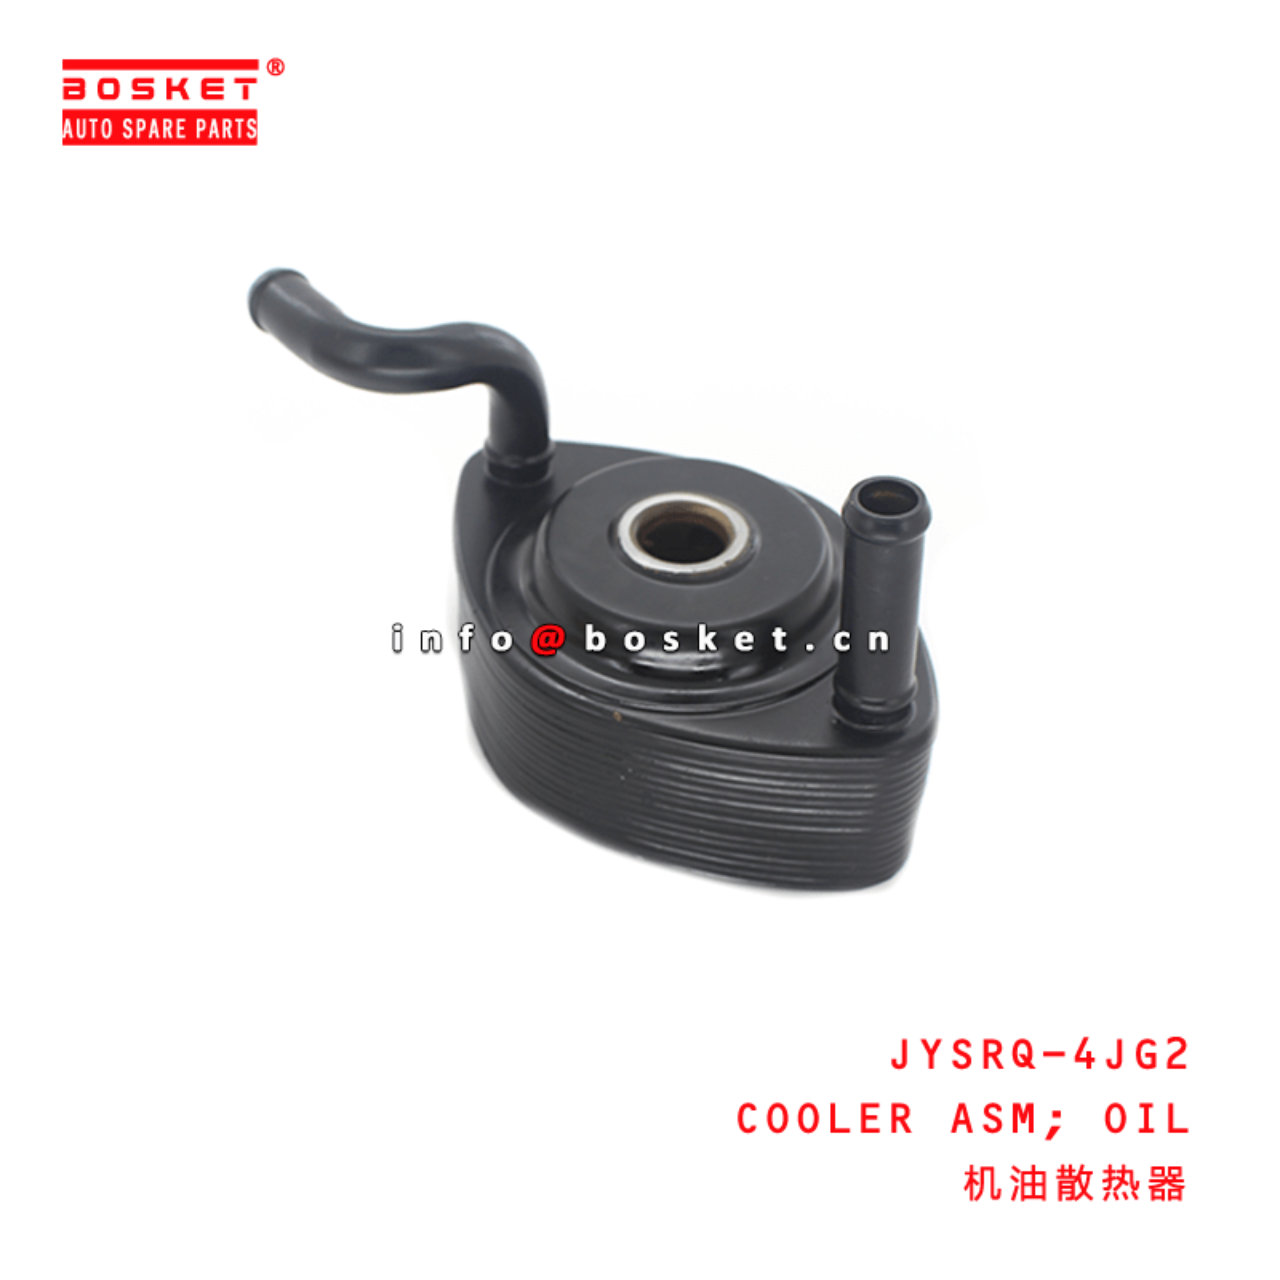 JYSRQ-4JG2 Oil Cooler Assembly Suitable for ISUZU 4JG2